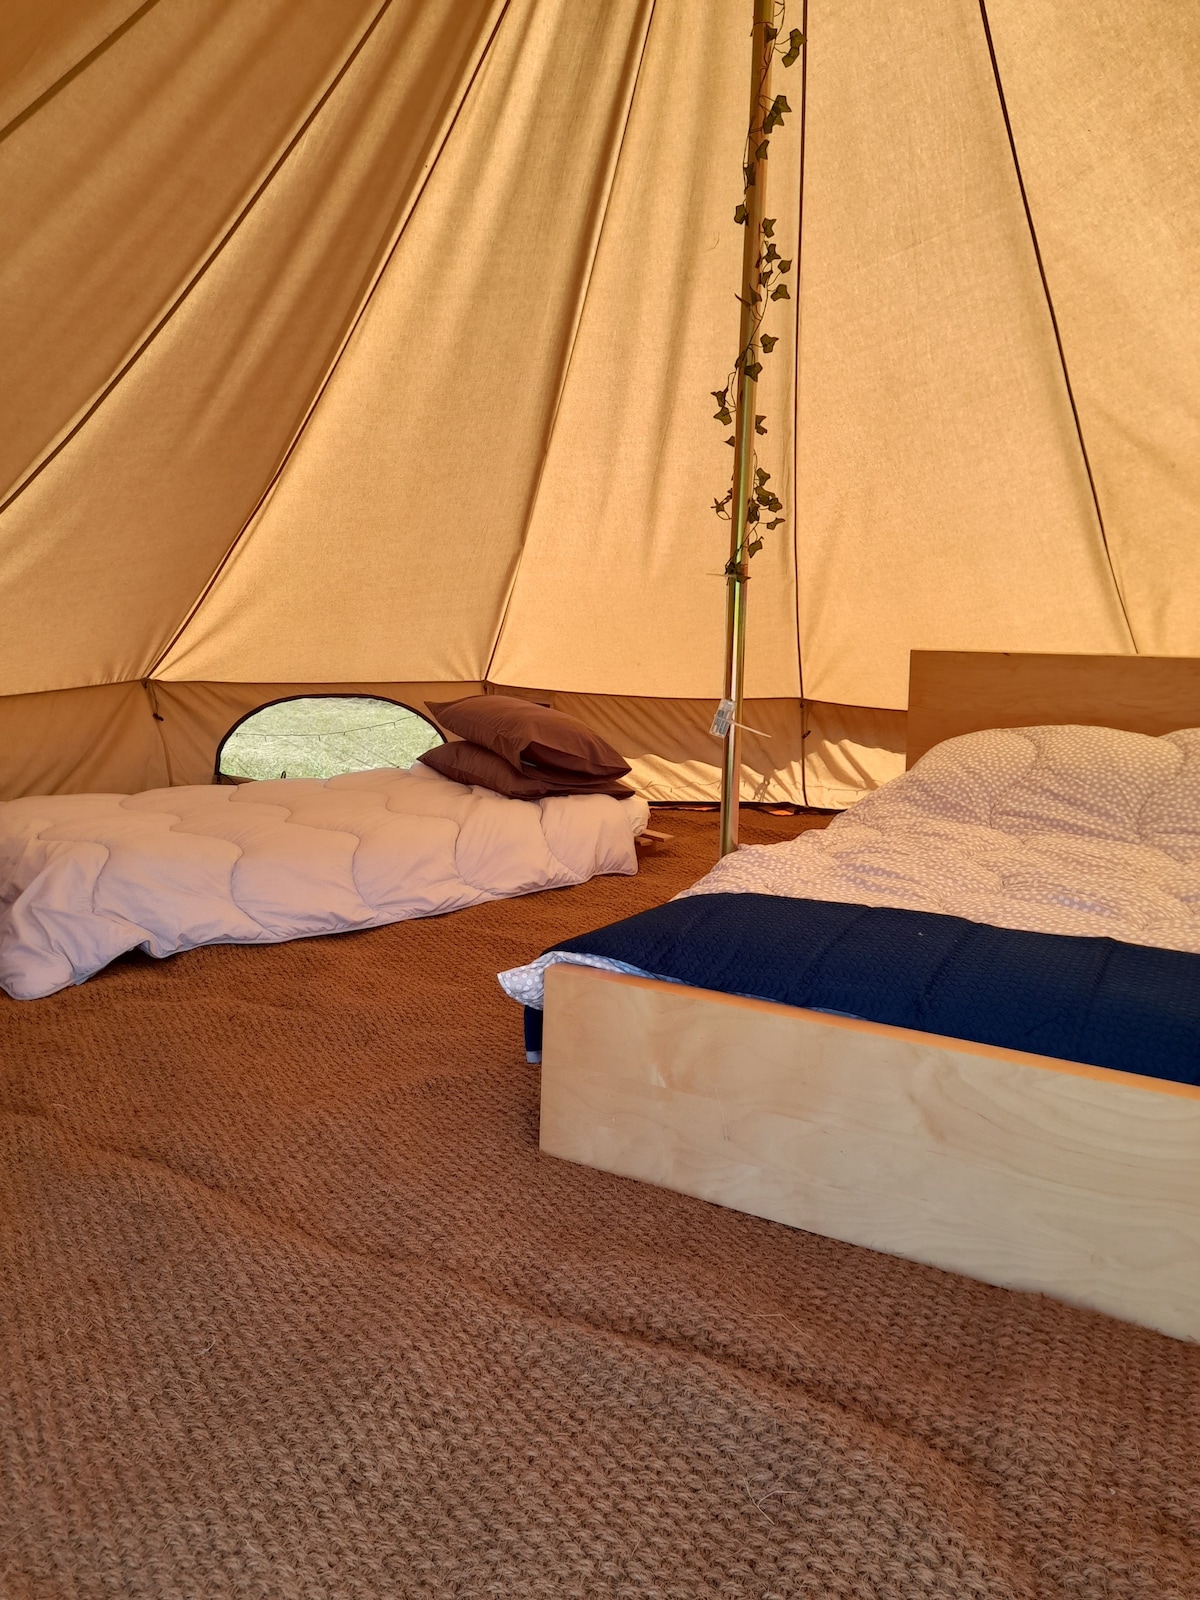 Traditional bell tent sleeps 4 in rural Tenterden